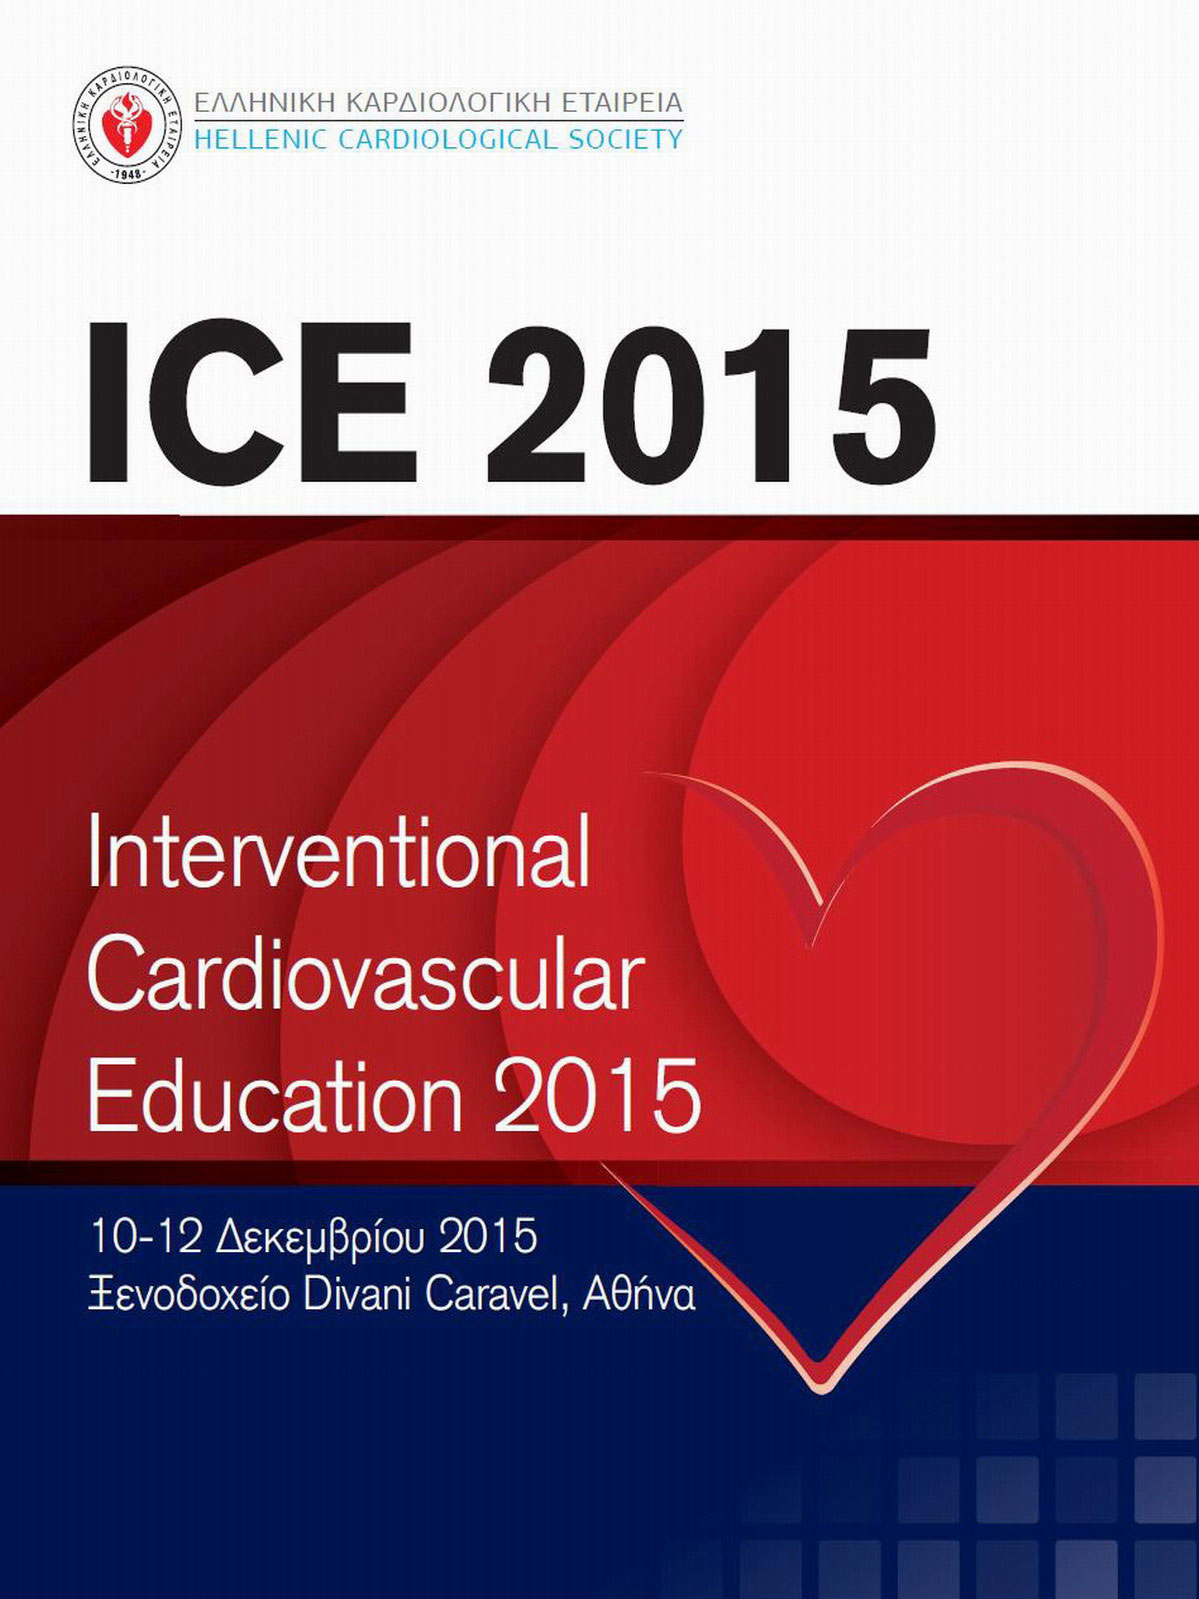 Διεθνές συνέδριο Επεμβατικής Καρδιολογίας διοργανώνει η Ελληνική Καρδιολογική Εταιρεία